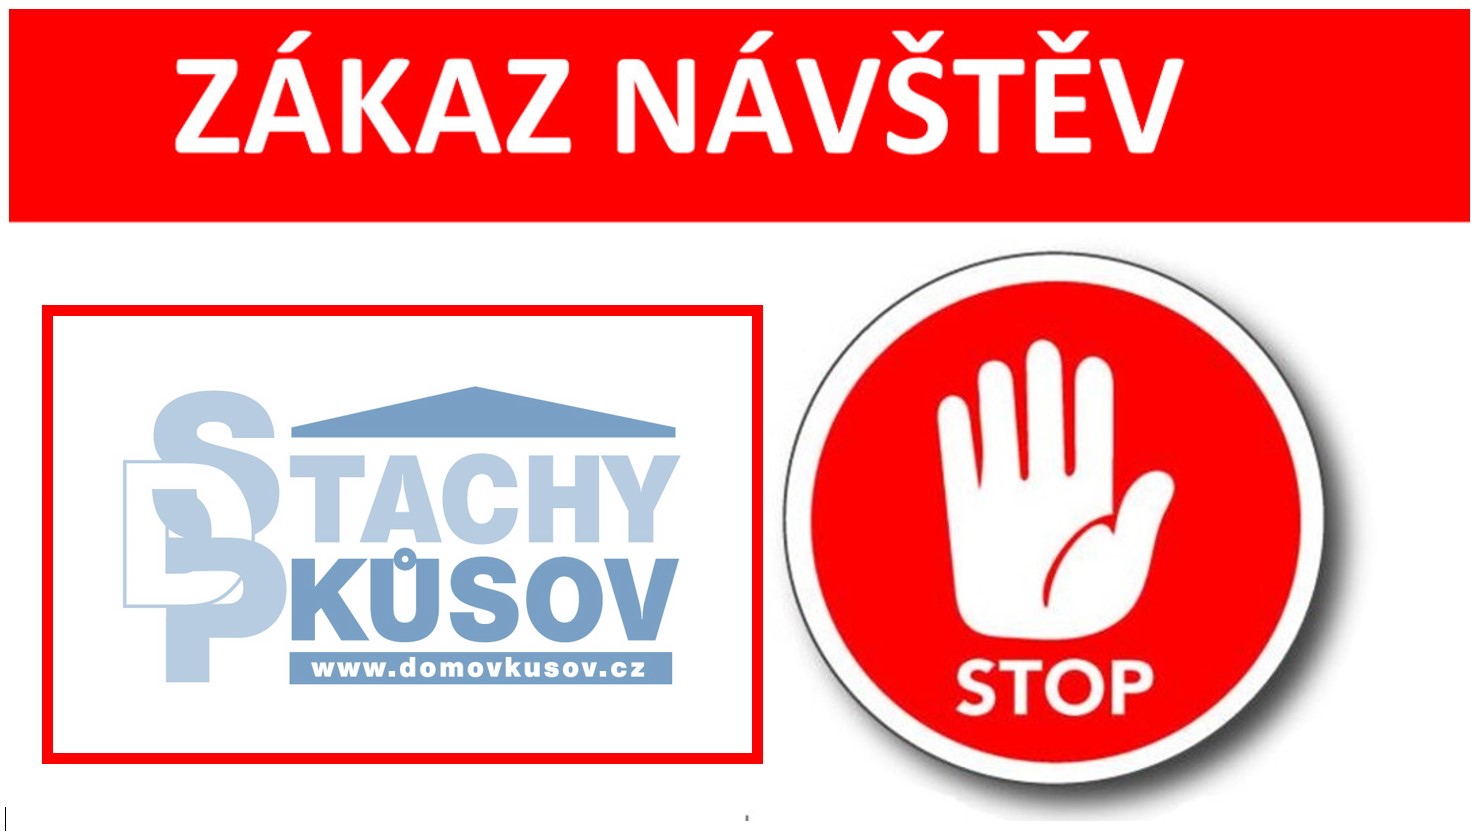 Zakaz navstev DPS Stachy-Kusov